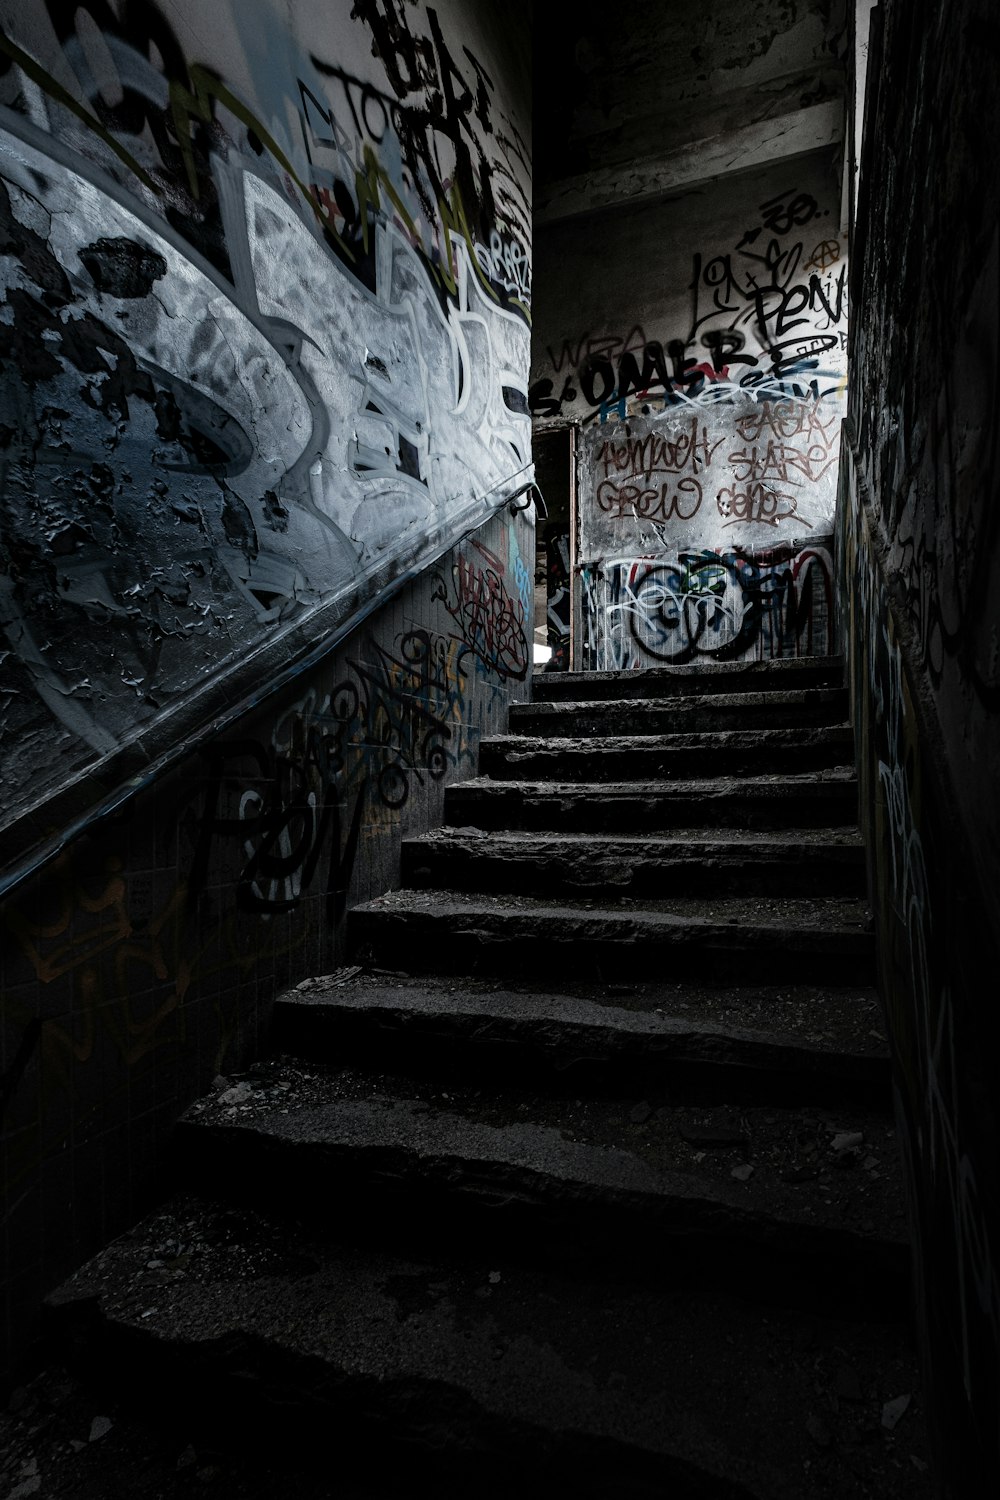 Escalier noir avec peinture murale blanche et bleue